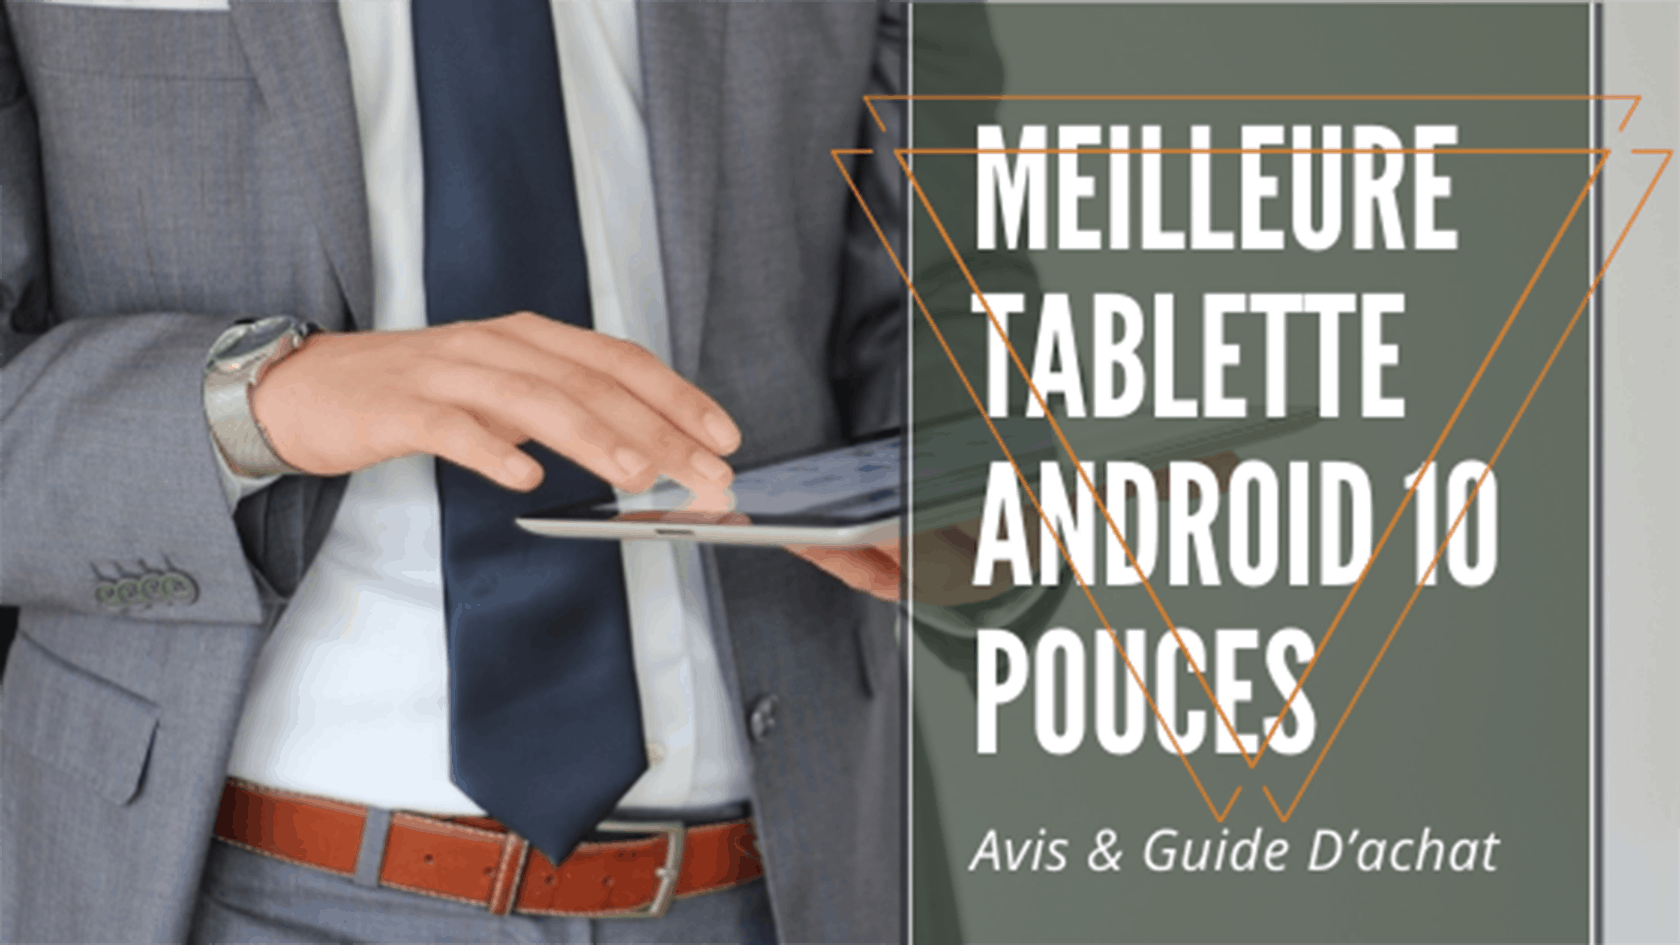 meilleure tablette android 10 pouces